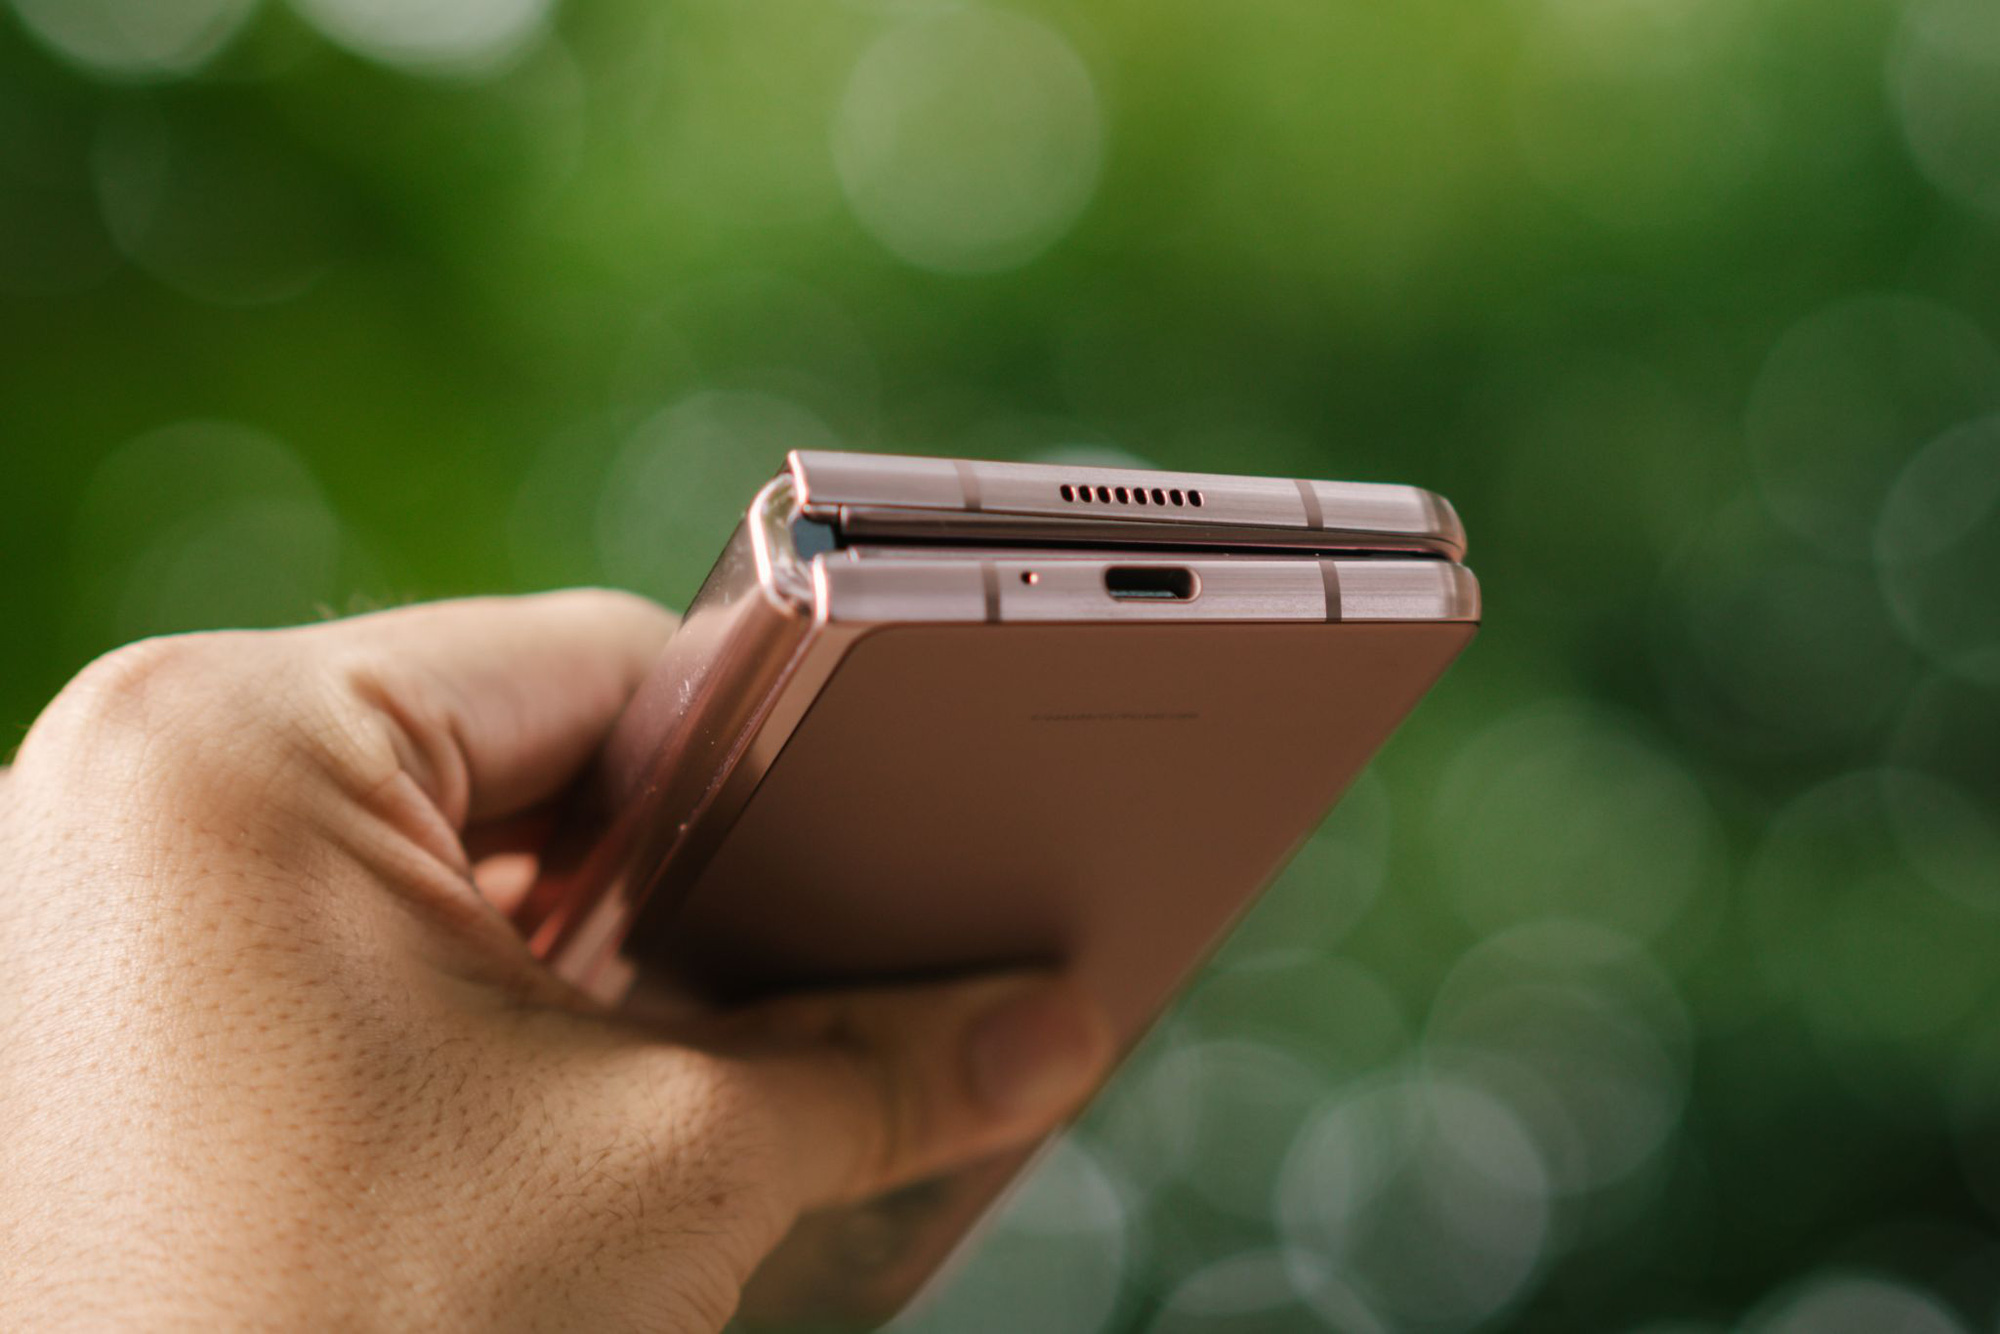 Công nghệ đặc biệt đem đến thiết kế hấp dẫn cho Galaxy Z Fold2 - Ảnh 3.